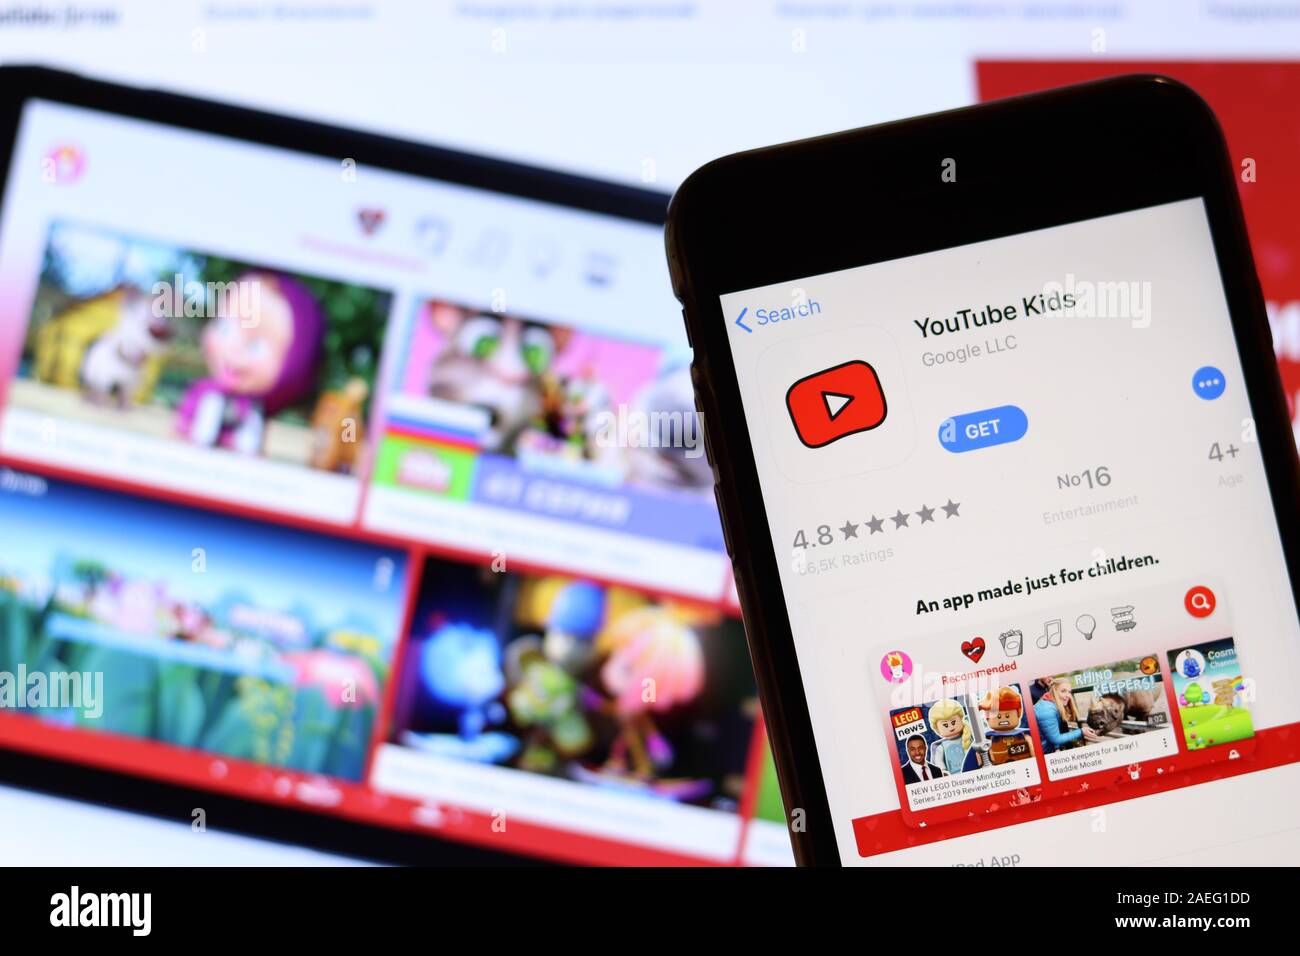 YouTube Kids là một nơi tuyệt vời để trẻ em được giải trí và tìm hiểu thế giới thông qua video. Với nhiều tùy chọn giúp bảo vệ trẻ em khỏi những nội dung không thích hợp, YouTube Kids là một lựa chọn an toàn và đáng tin cậy cho trẻ em. Xem hình ảnh để biết thêm về ứng dụng này.